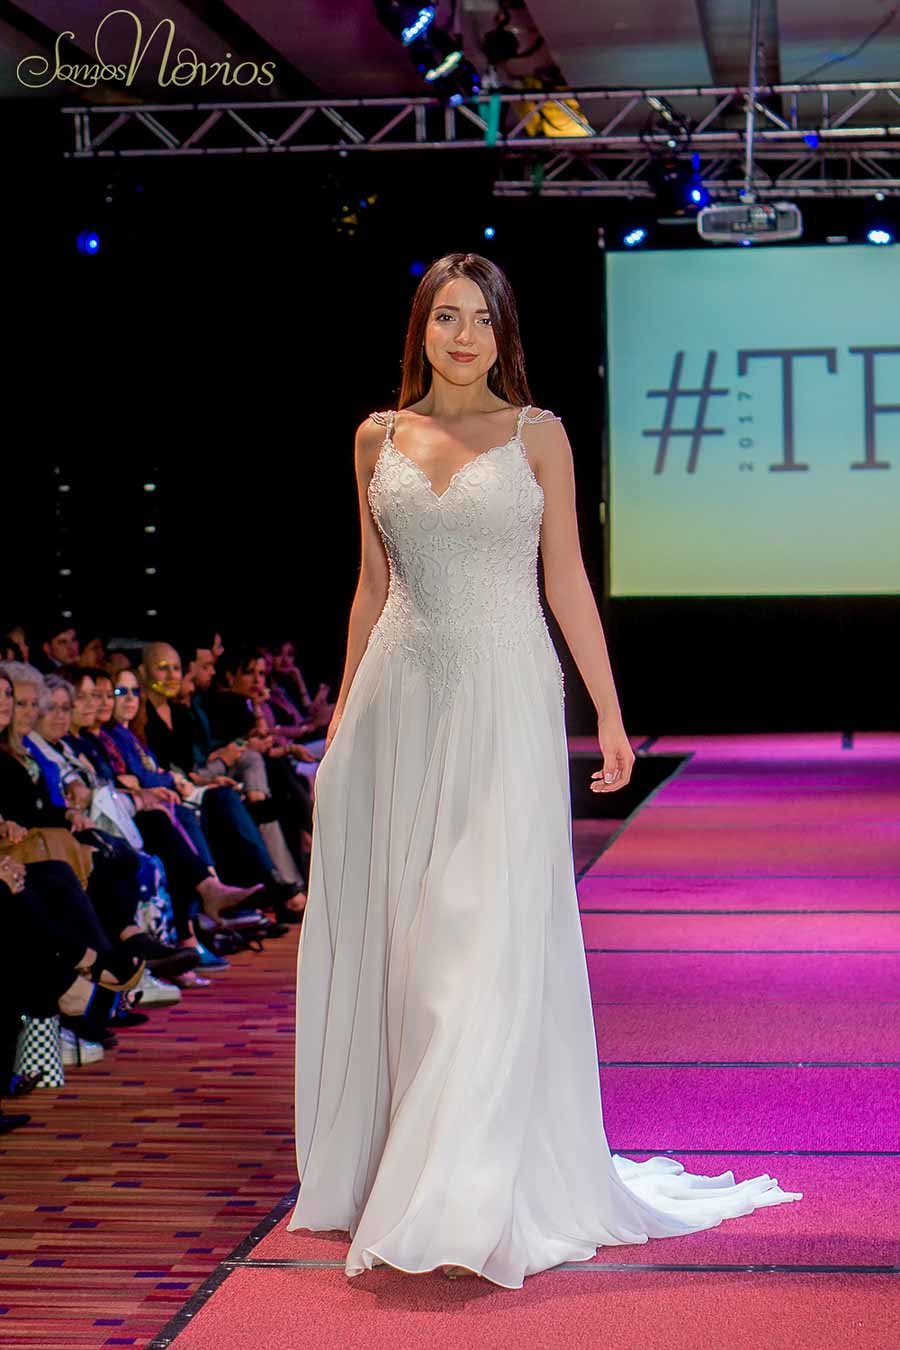 Modelo con Vestido de novia chiffon escote princesa y cadenitas en los ombros en la pasarela del Temuco Fashion Show 2017